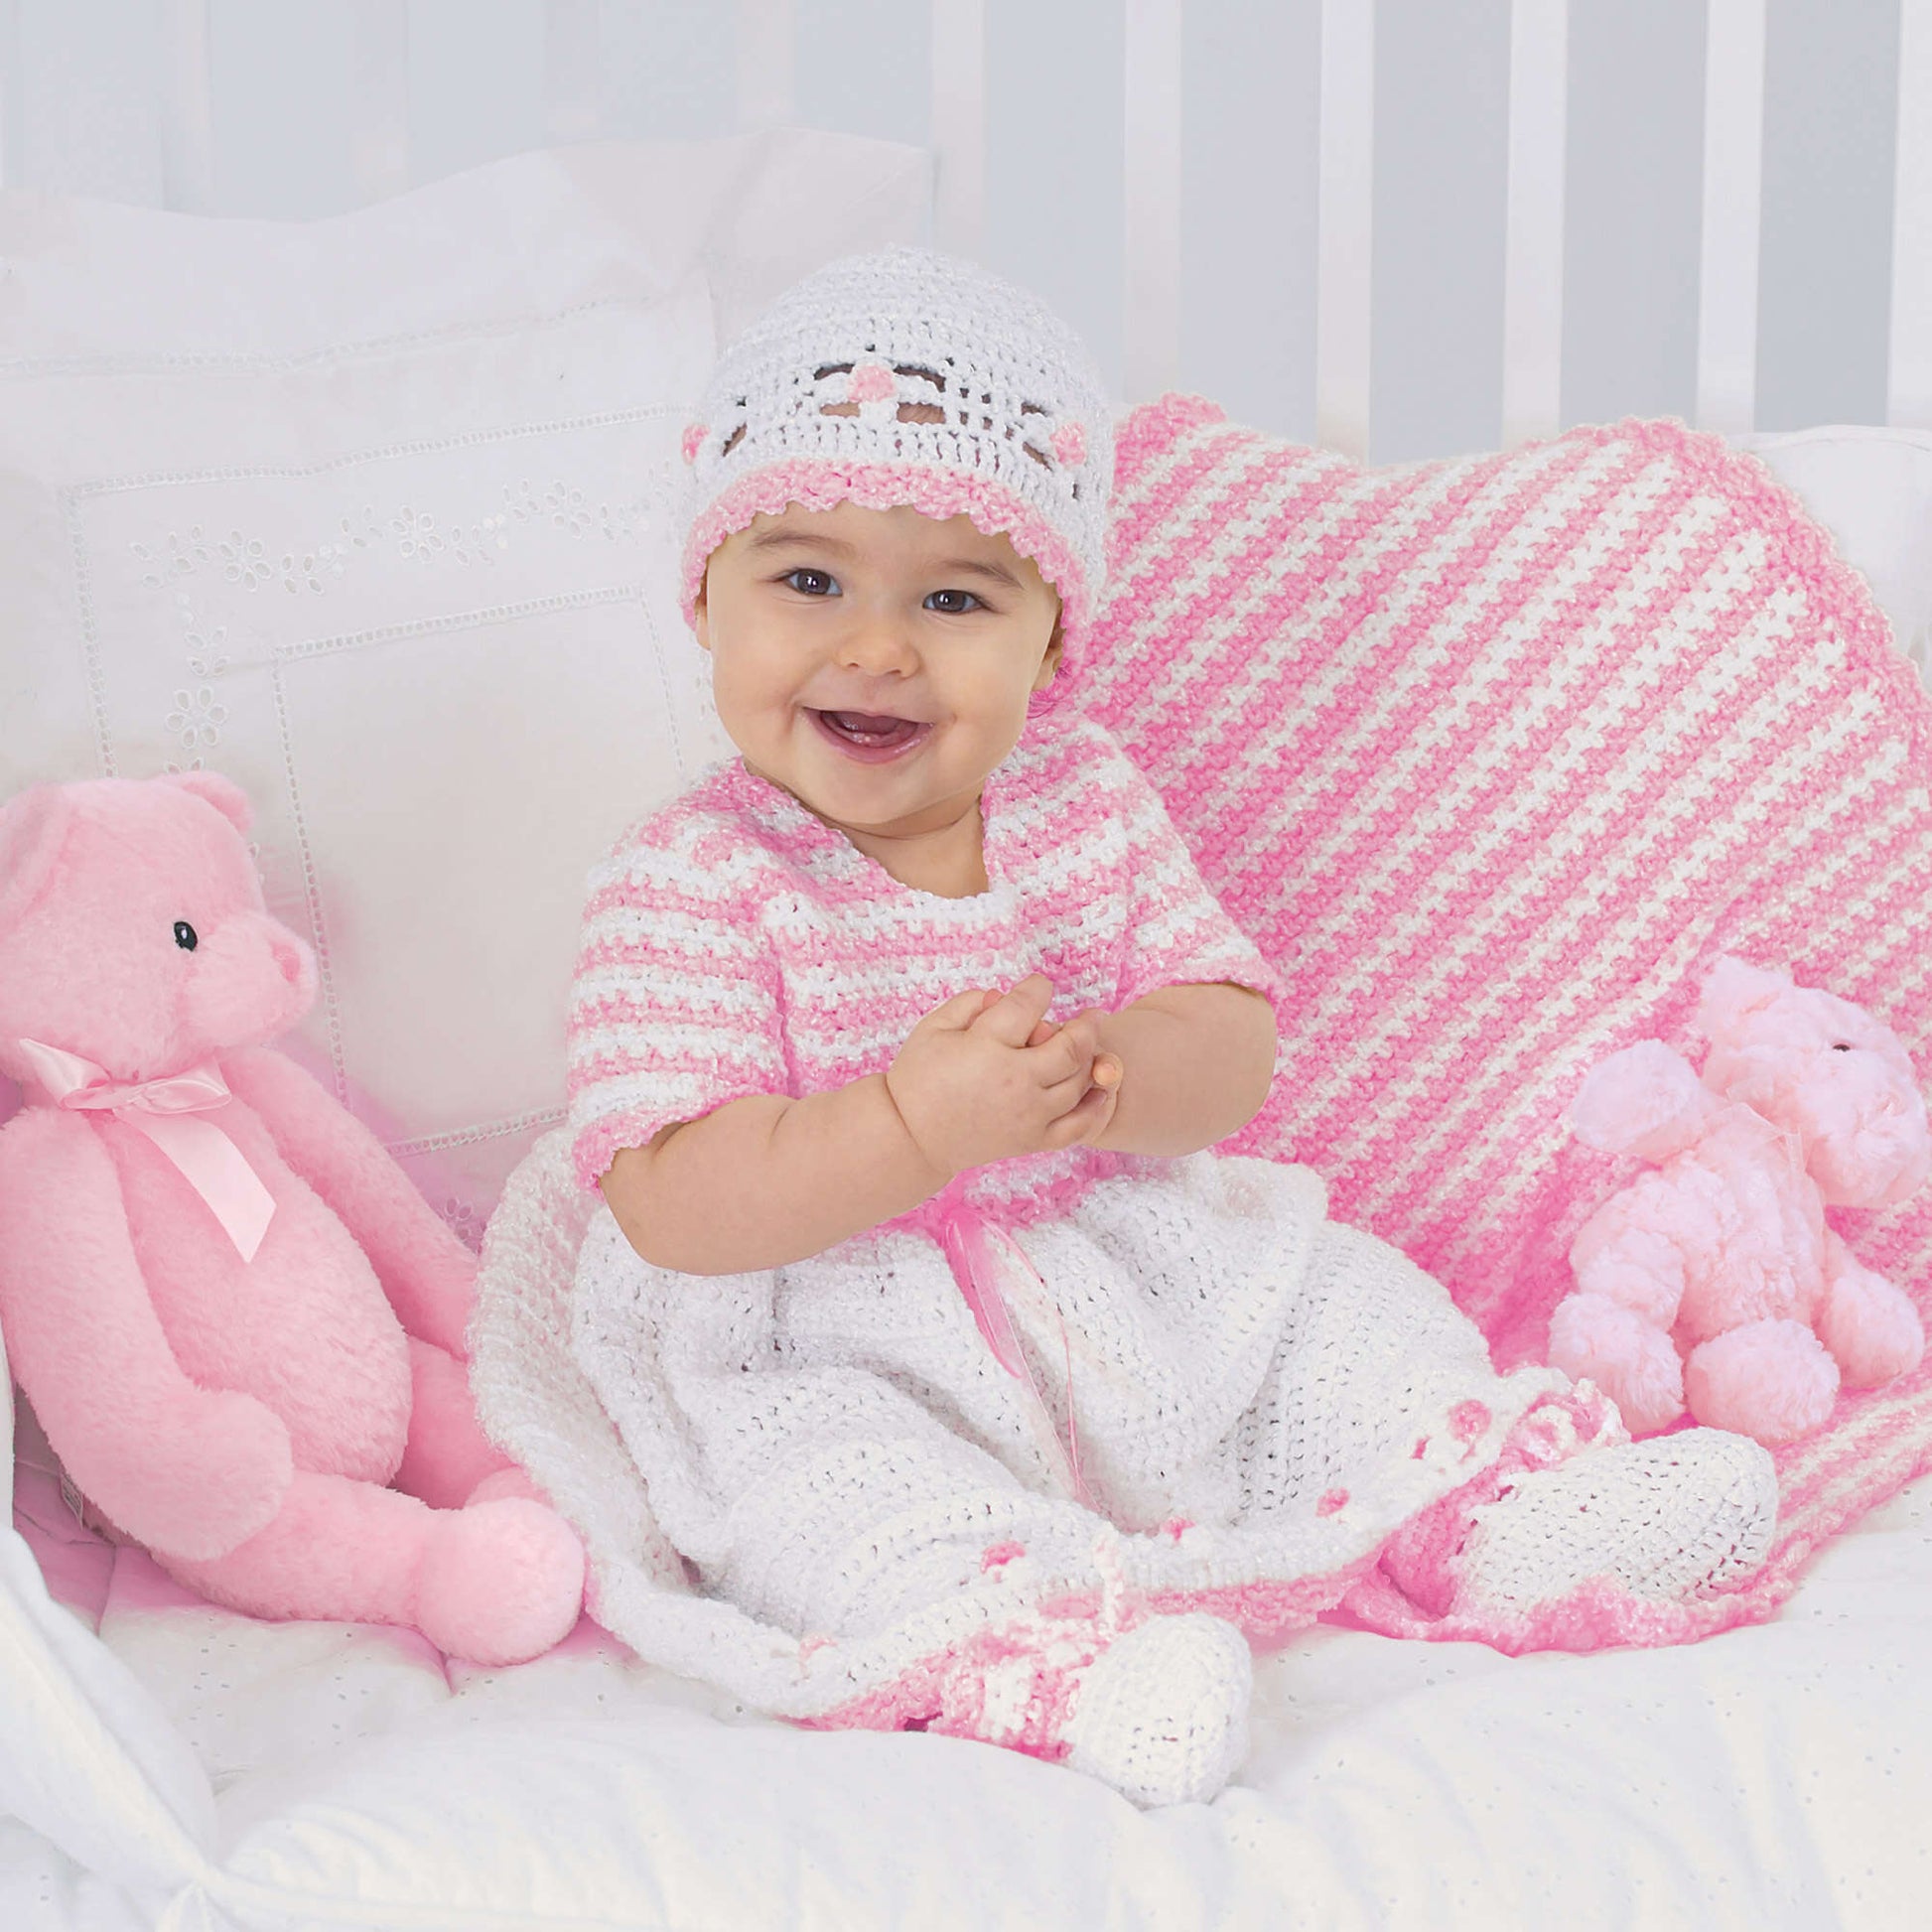 Free Bernat Crochet Sweet Baby Outfit Pattern